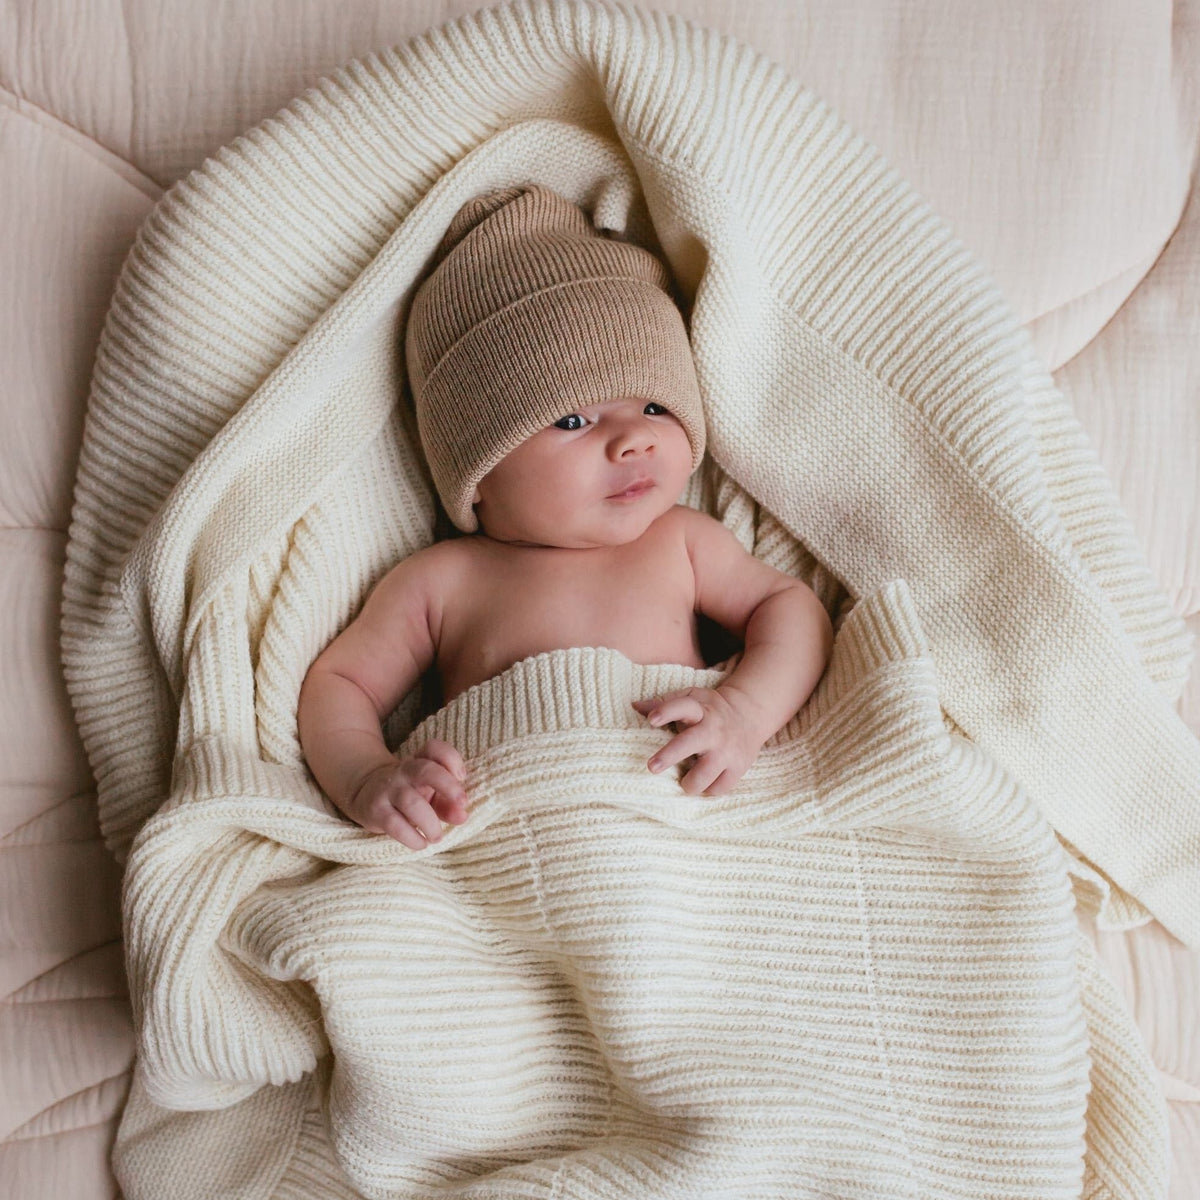 Ledikant deken Gaston Soft Beige baby in deken gewikkeld.